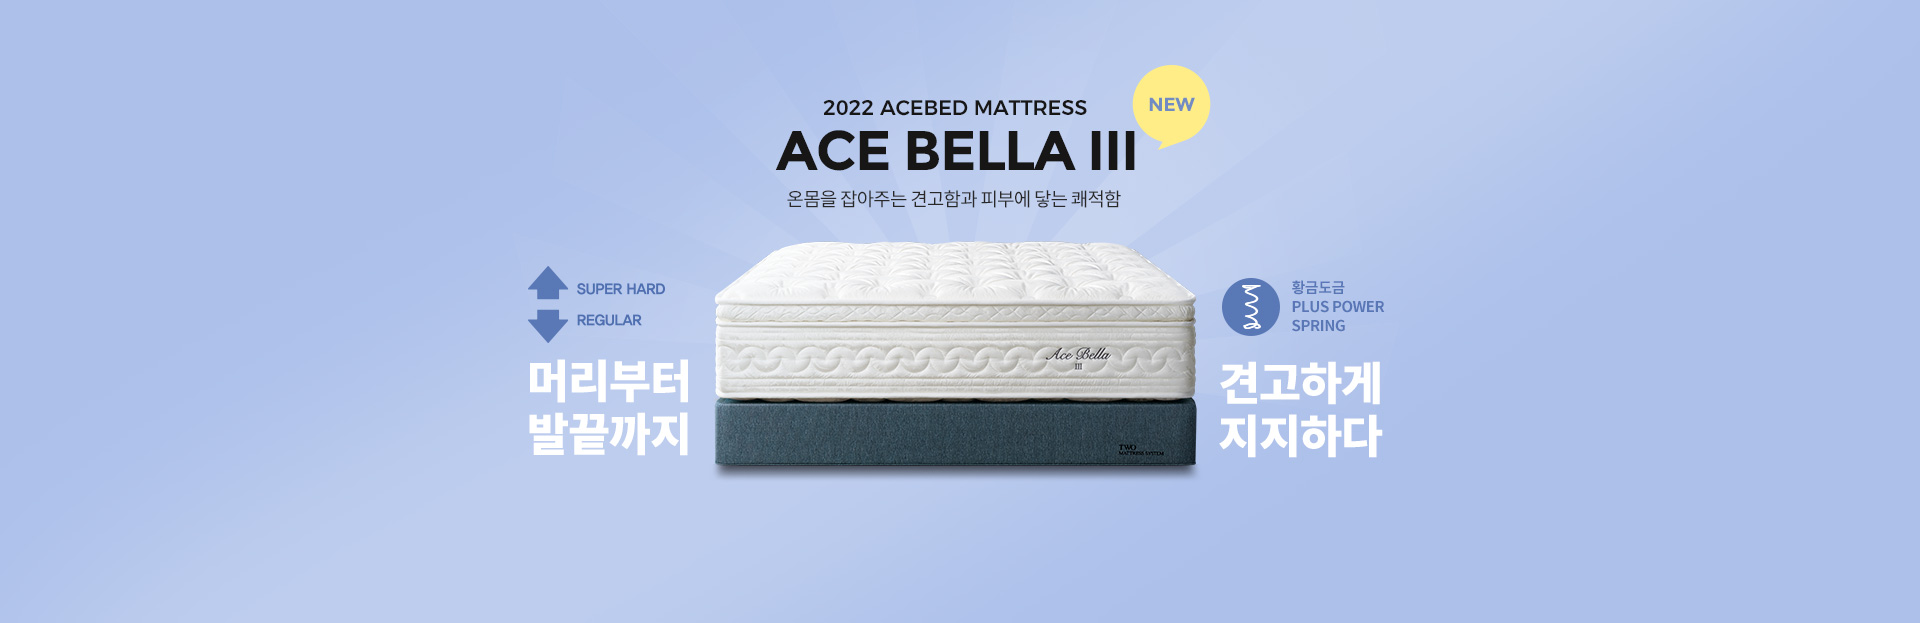 신제품 ACE BELLA III 출시!